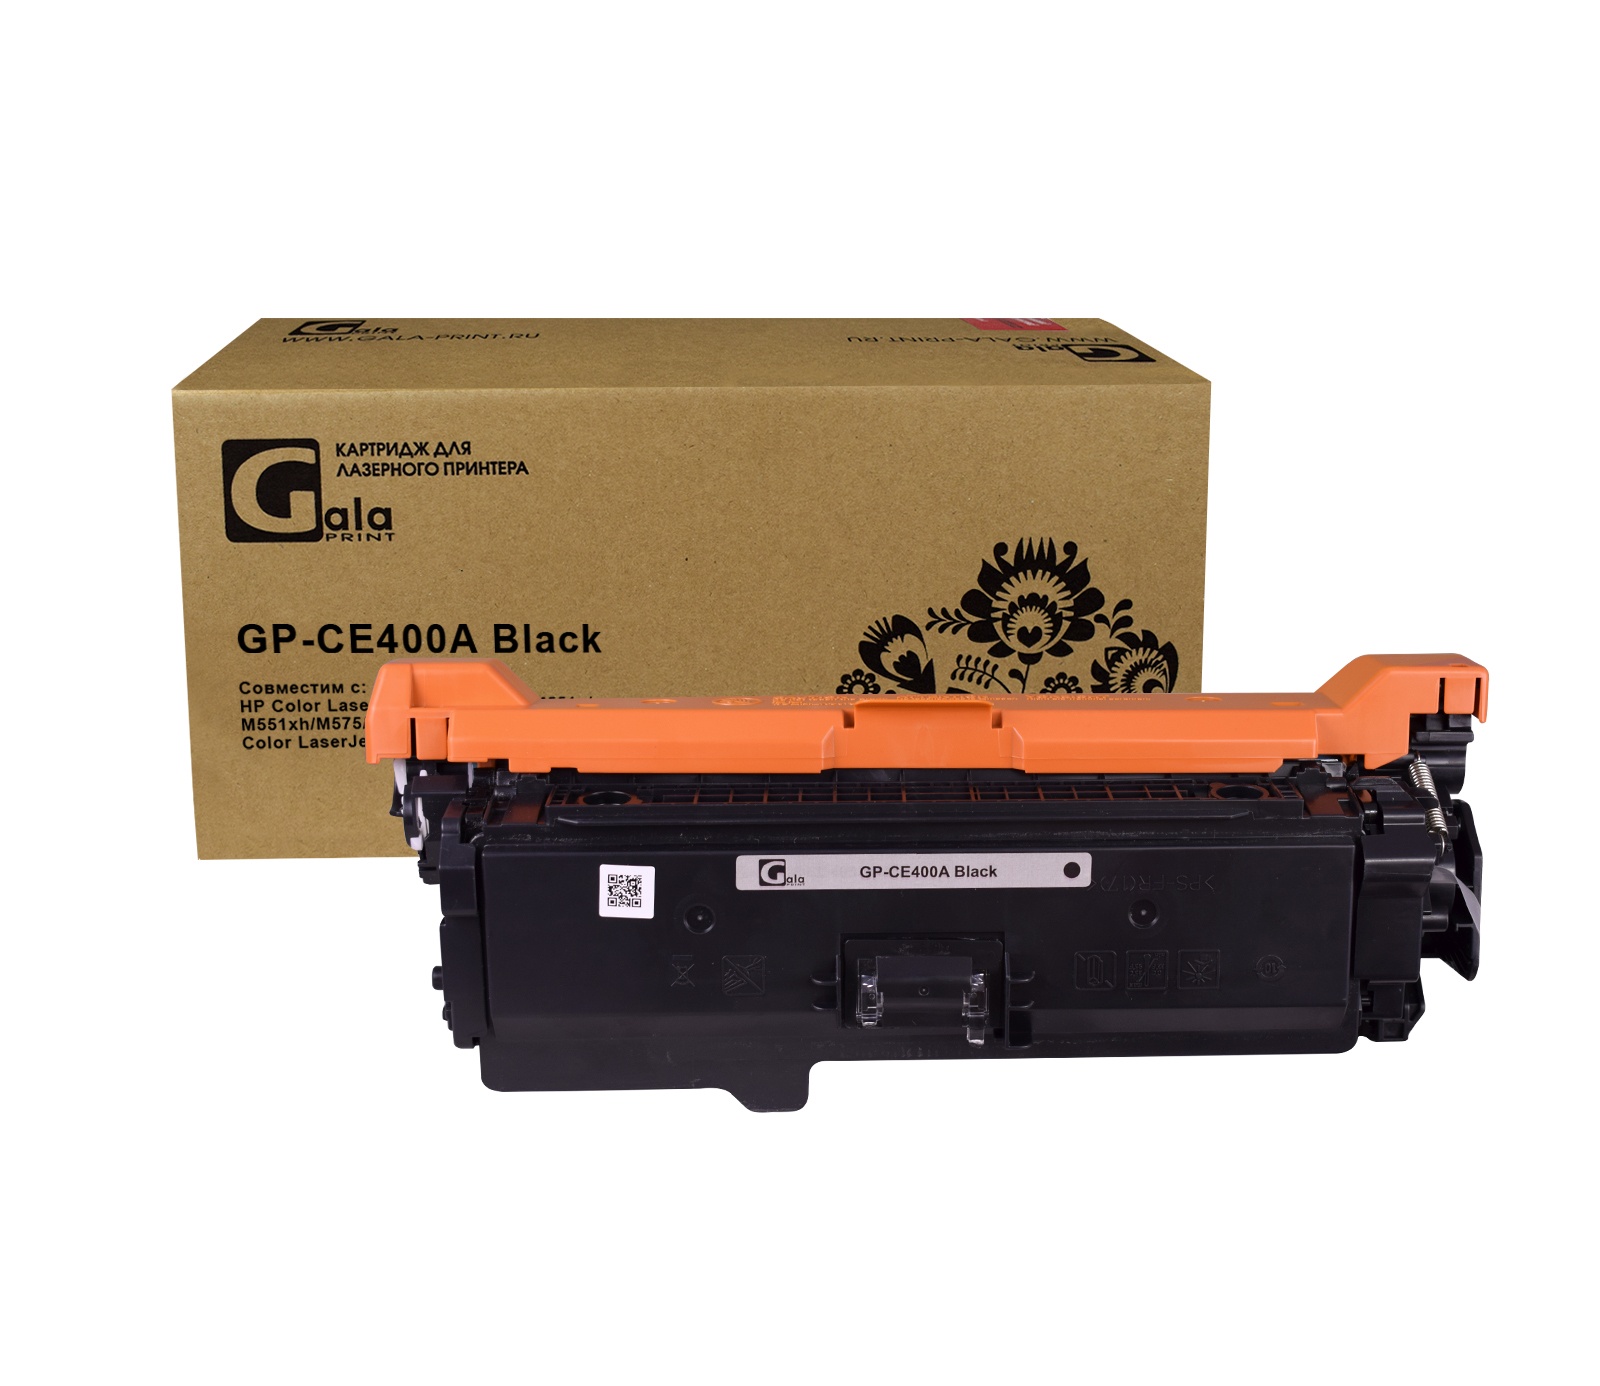 Картридж GP-CE400A для принтеров HP Color LaserJet Enterprise M551dn/M551n/M551xh Black 5500 копий GalaPrint